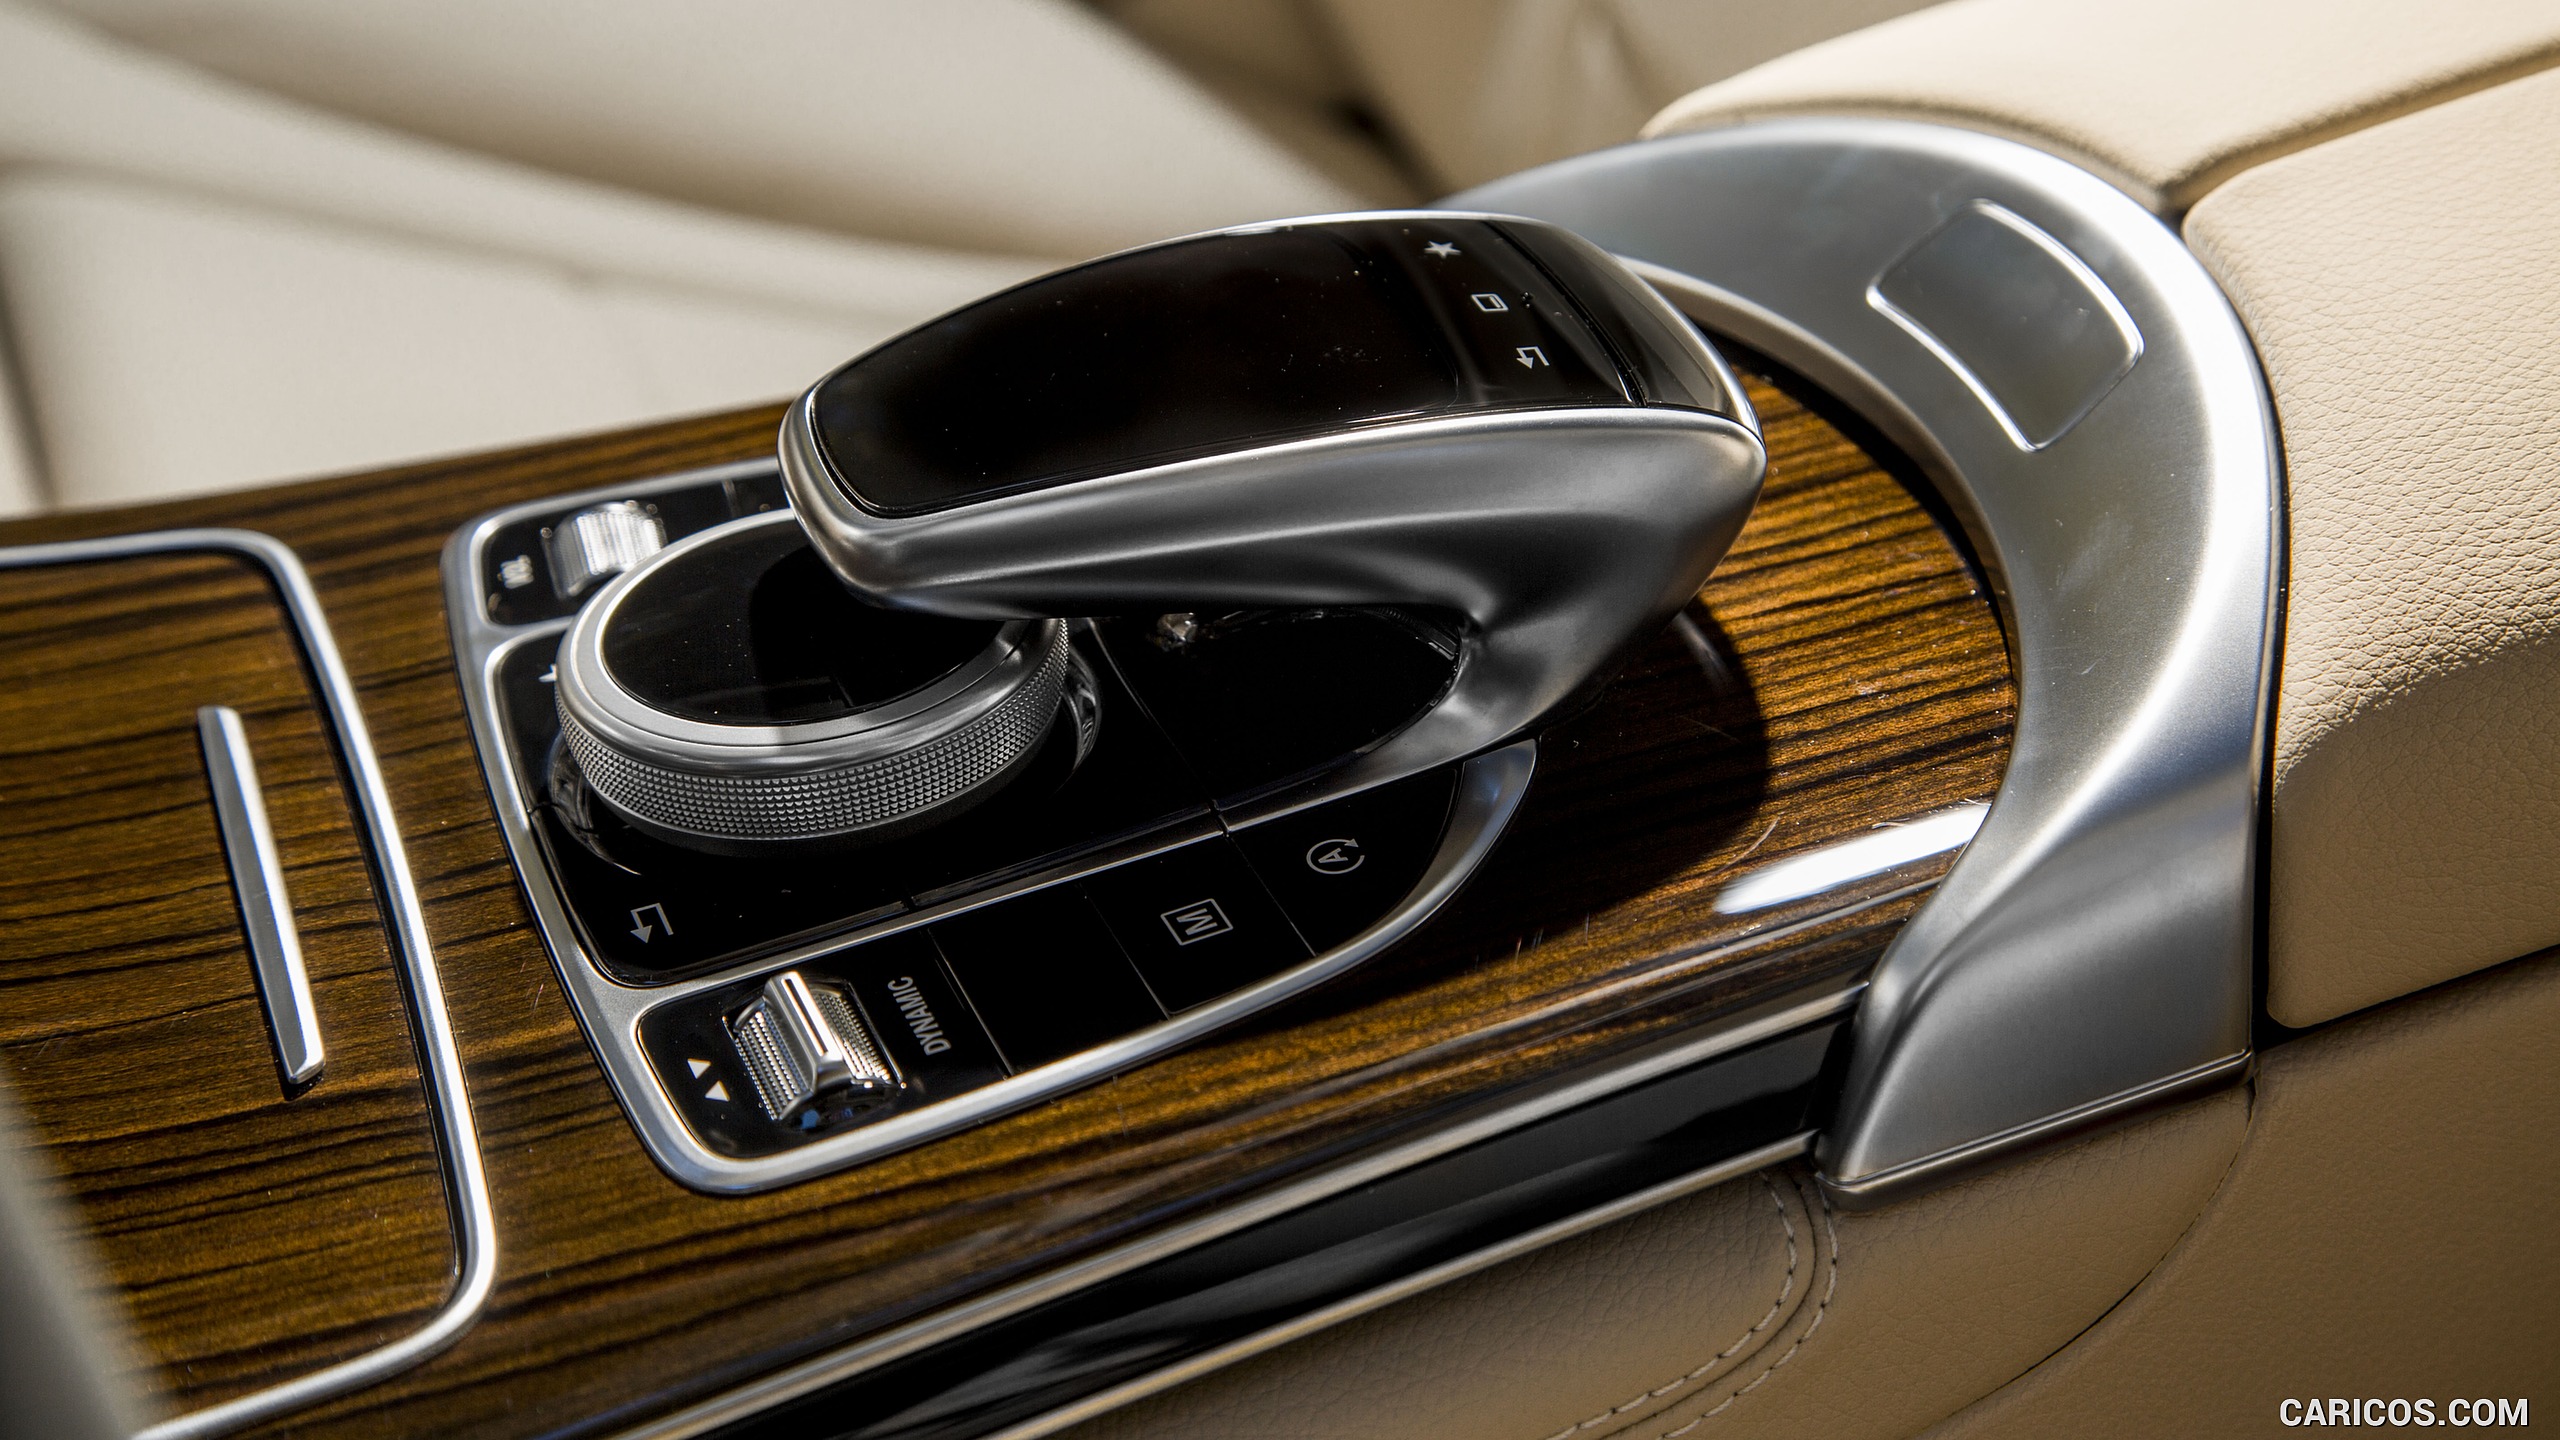 2016 Mercedes-Benz GLC GLC300 4MATIC (US-Spec) - Interior, Controls, #100 of 180